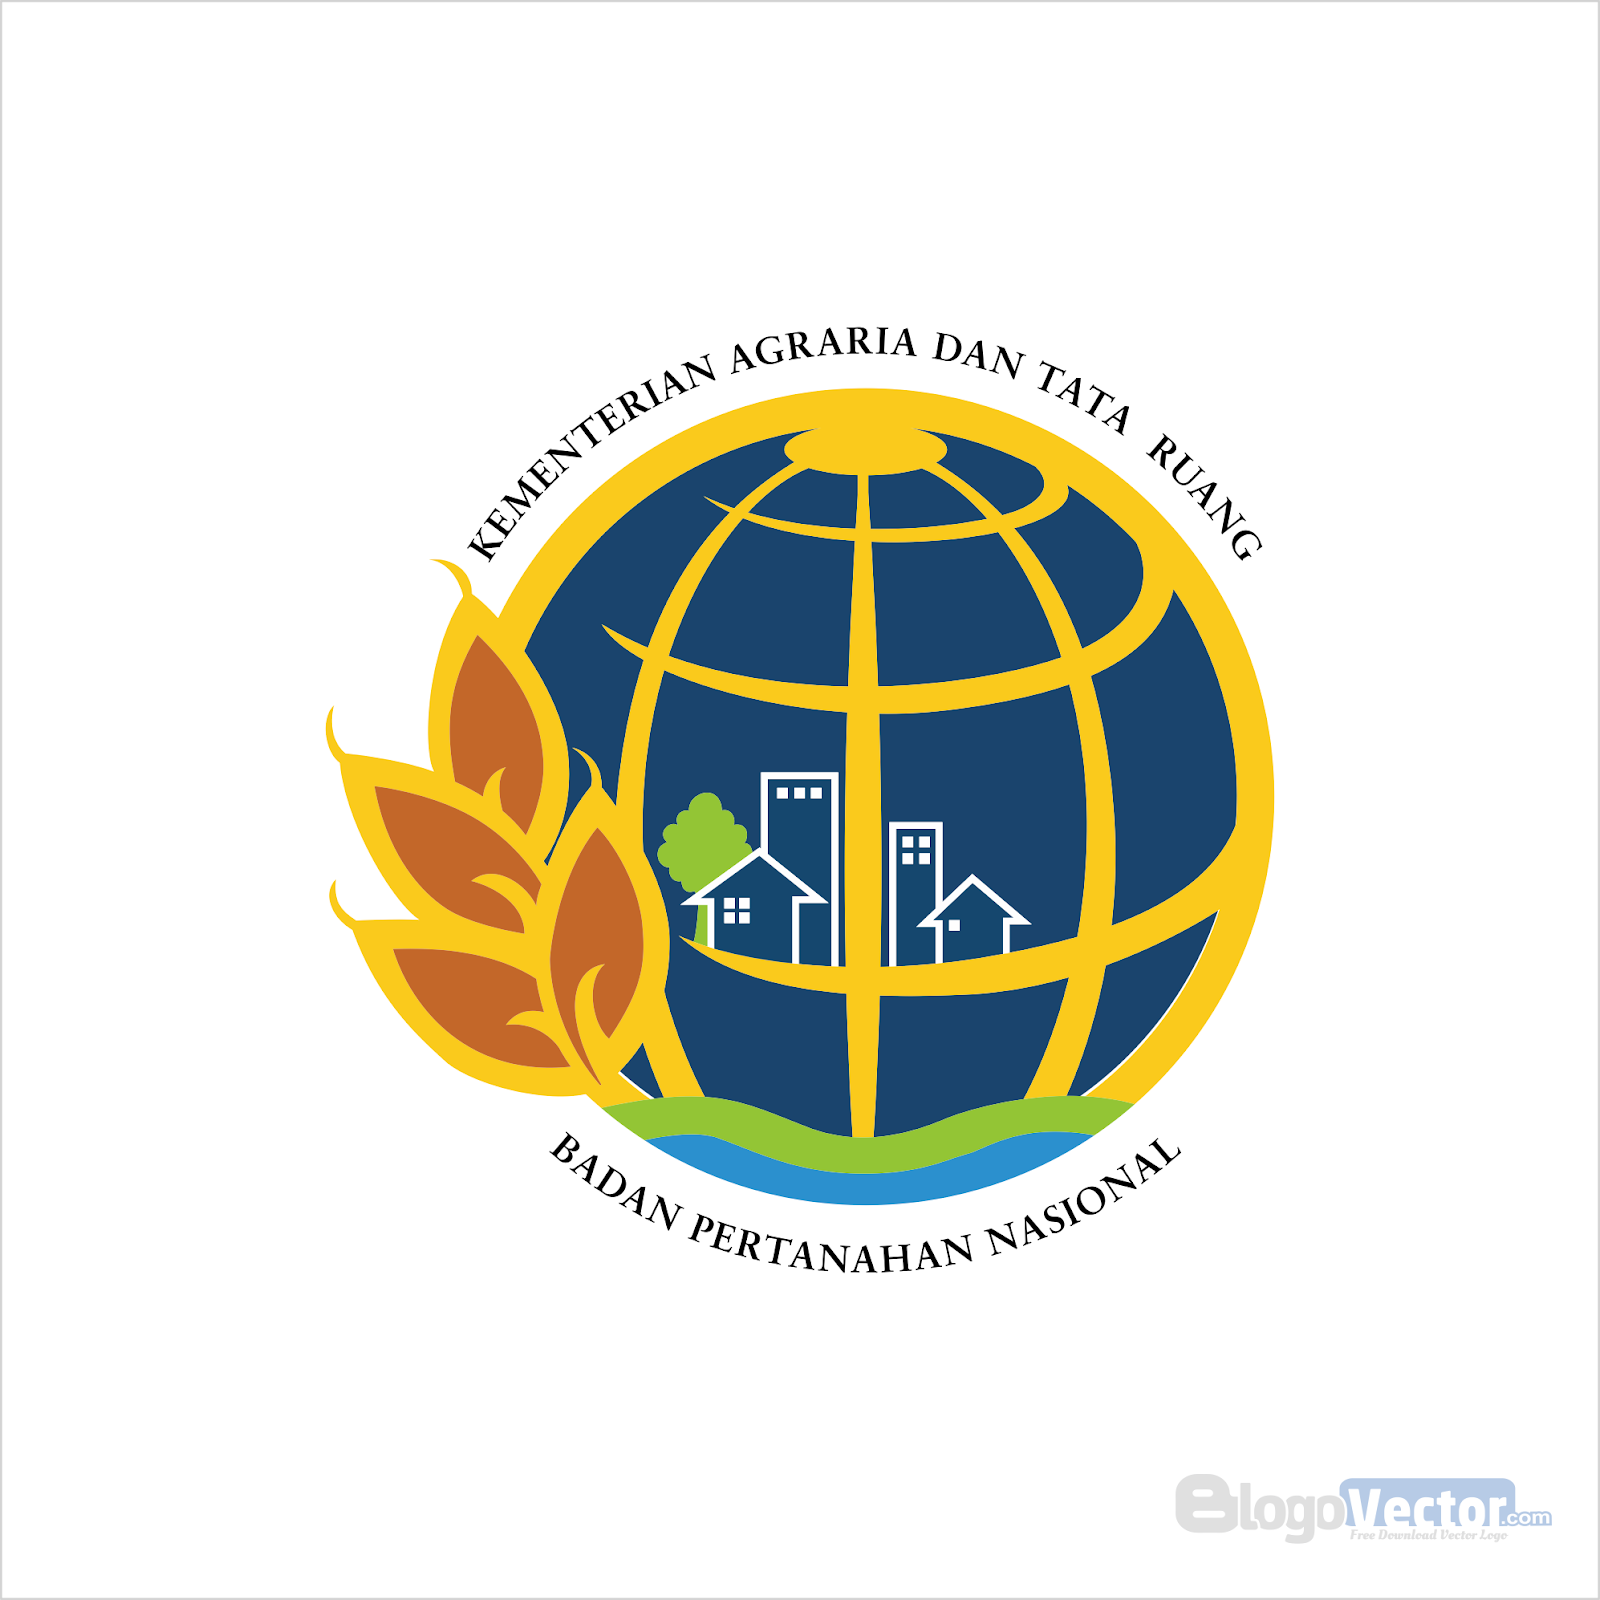 Badan Pertanahan Nasional (BPN) Logo vector (.cdr) - BlogoVector